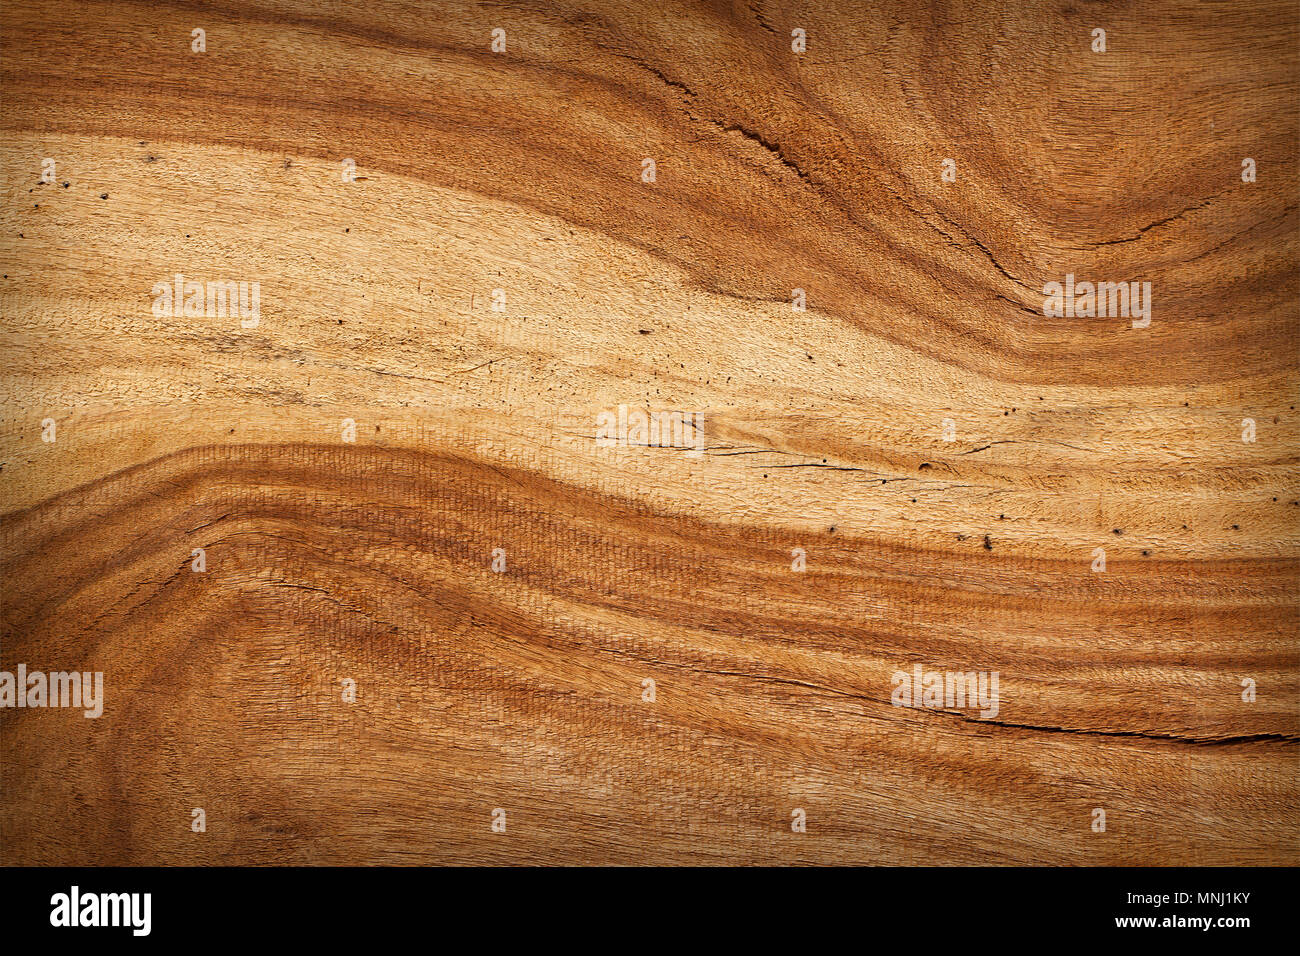 Ảnh nền gỗ Mahogany sẽ mang đến một không gian làm việc hoàn hảo cho bạn. Sự kết hợp giữa những vân gỗ và màu sắc tự nhiên sẽ tạo nên một không gian ấm cúng và sang trọng. Hãy xem ảnh để cảm nhận vẻ đẹp của gỗ Mahogany.